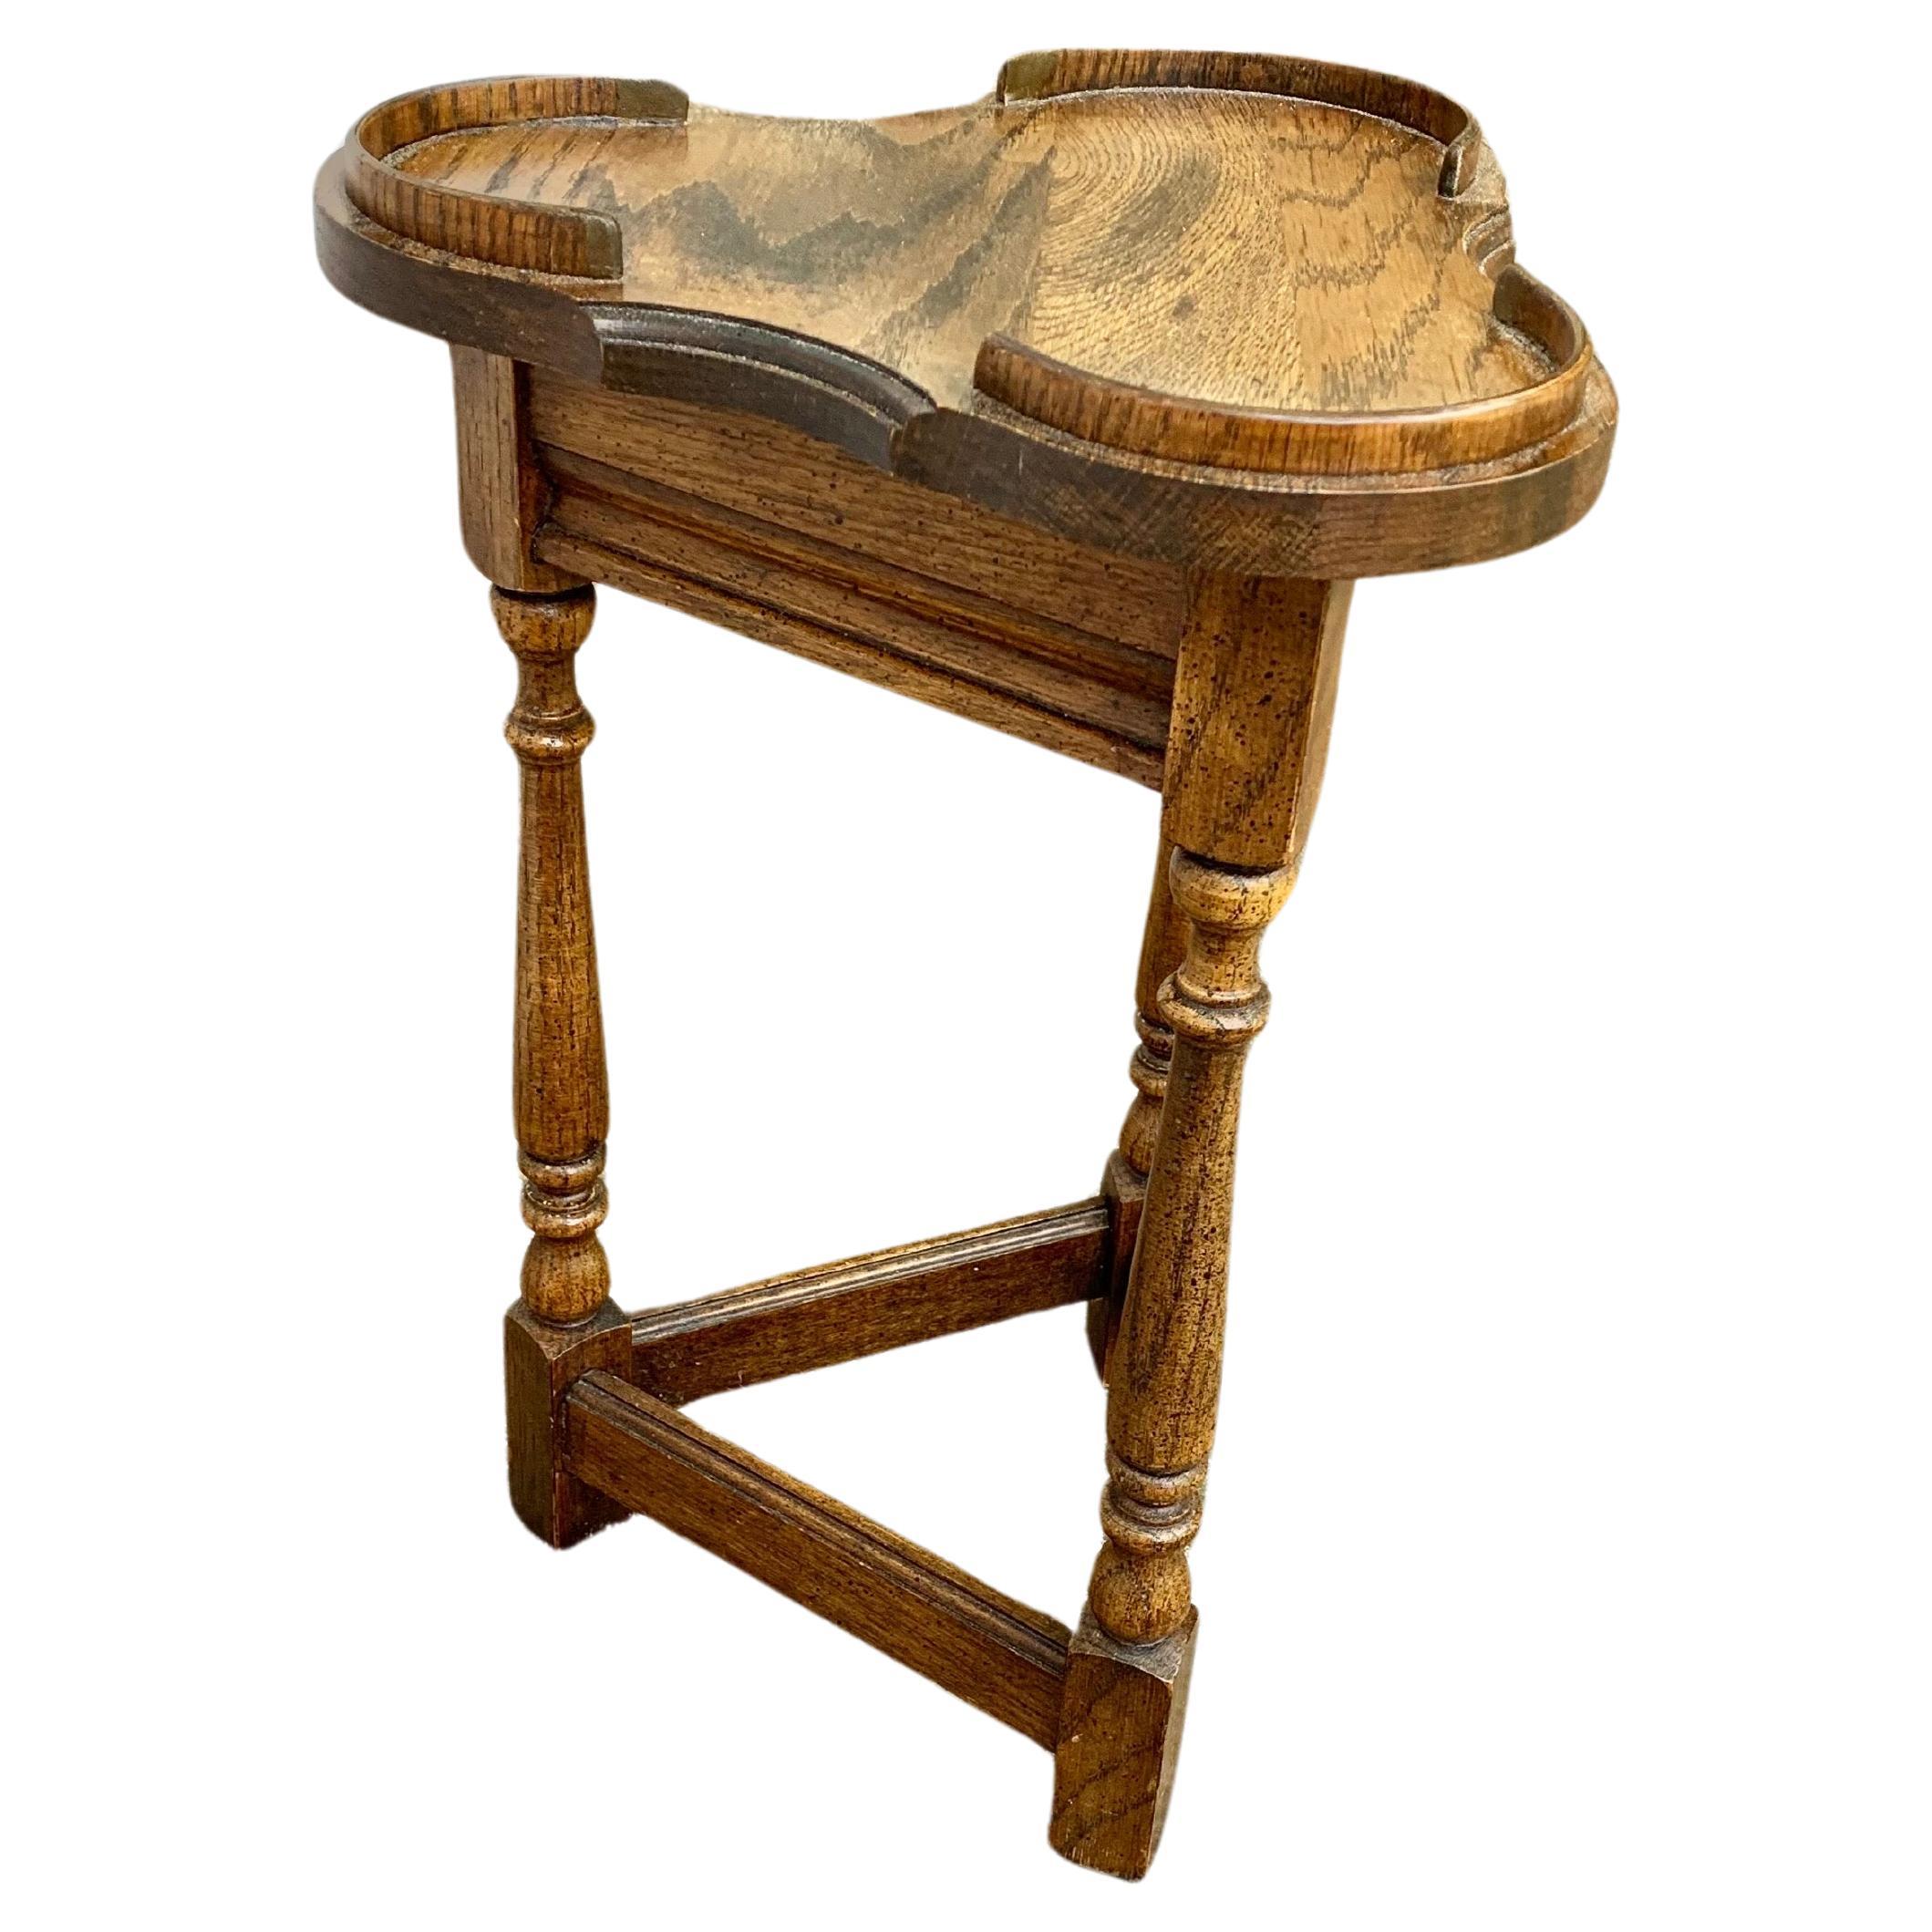 Trouvée en Angleterre, cette table d'appoint Cricket Clover a été fabriquée par des artisans anglais à partir de chêne ancien au début du 20e siècle. La table présente un plateau en forme de trèfle reposant sur une frise triangulaire et une base en